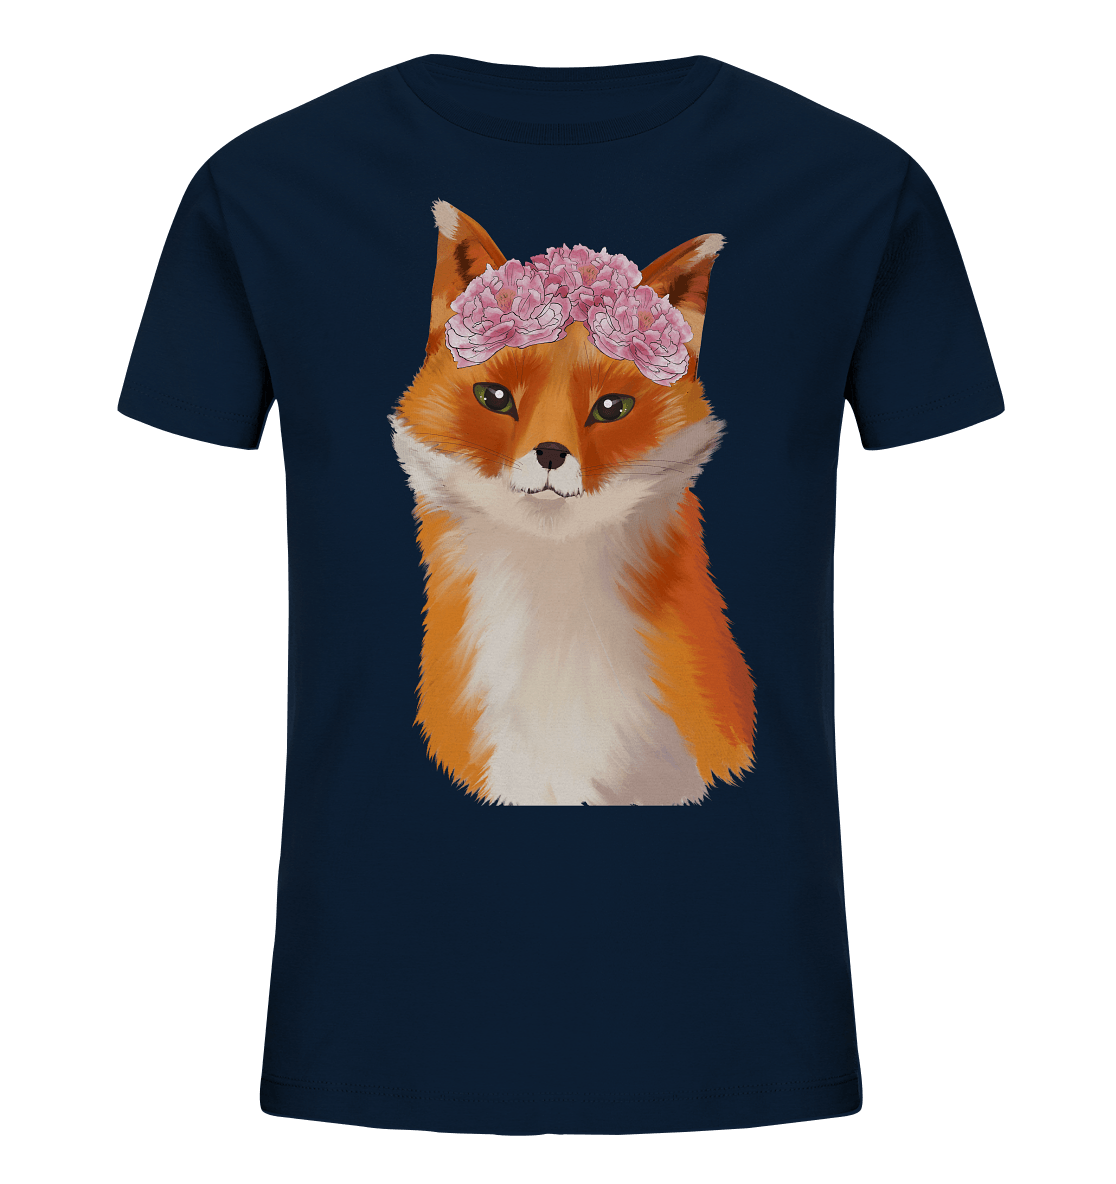 Fuchs Kinder T-Shirt "Fuchs mit Blumen" in navy